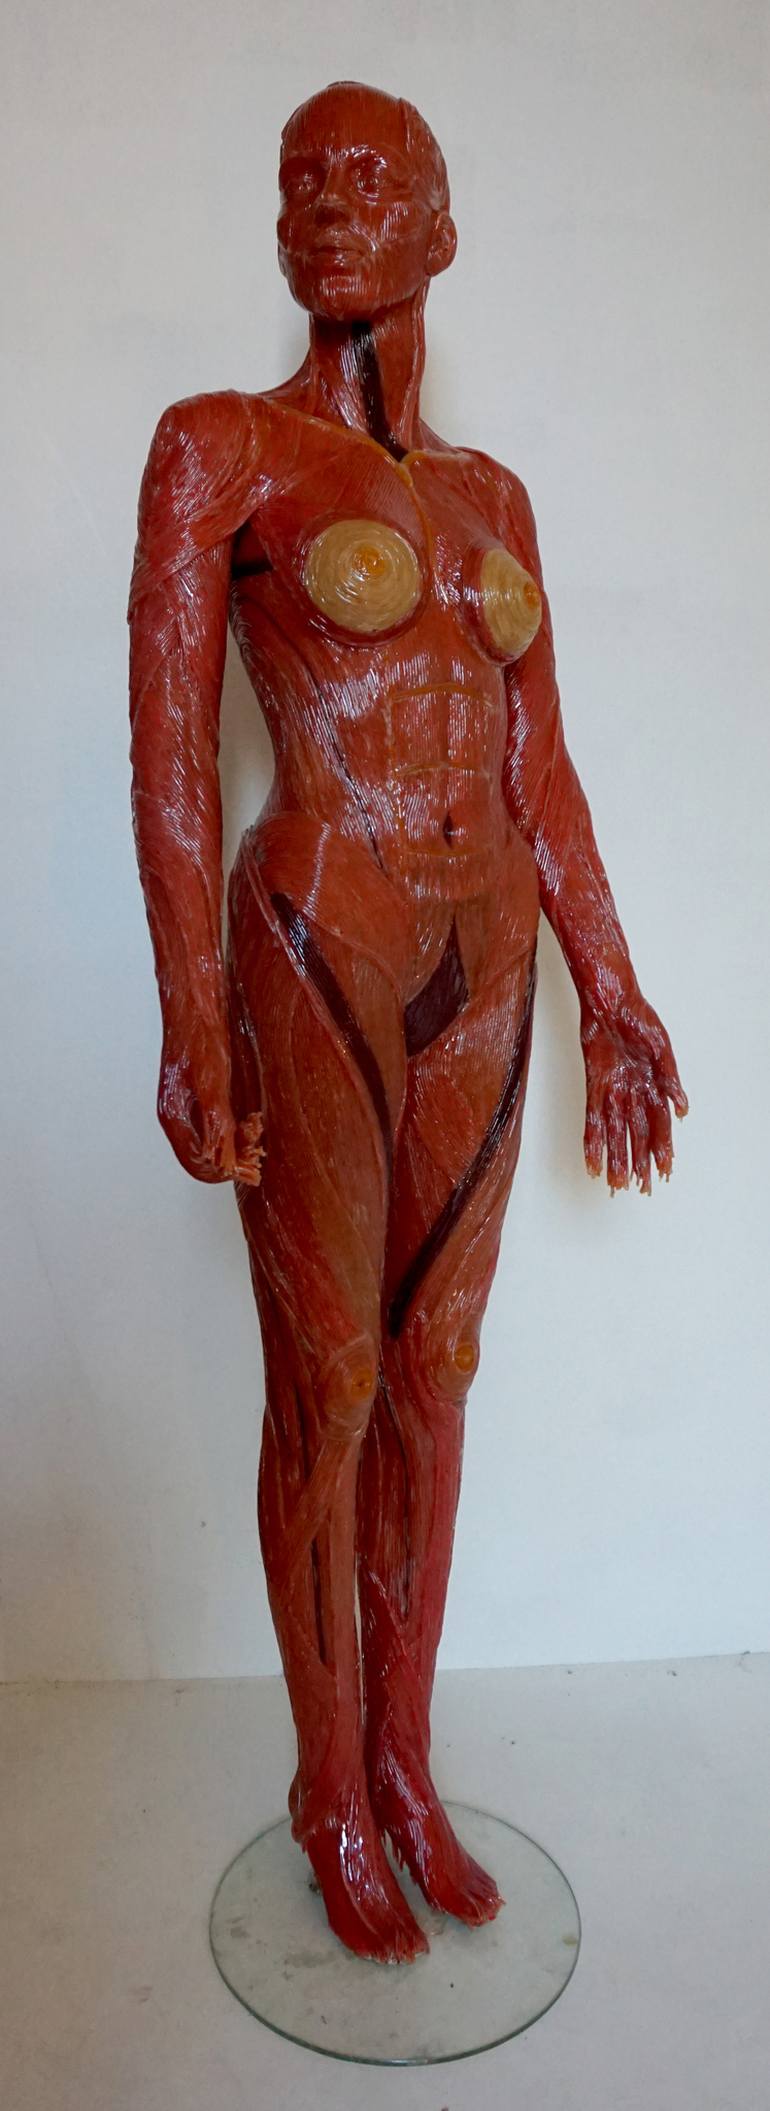 Original Conceptual Body Sculpture by Marit Otto